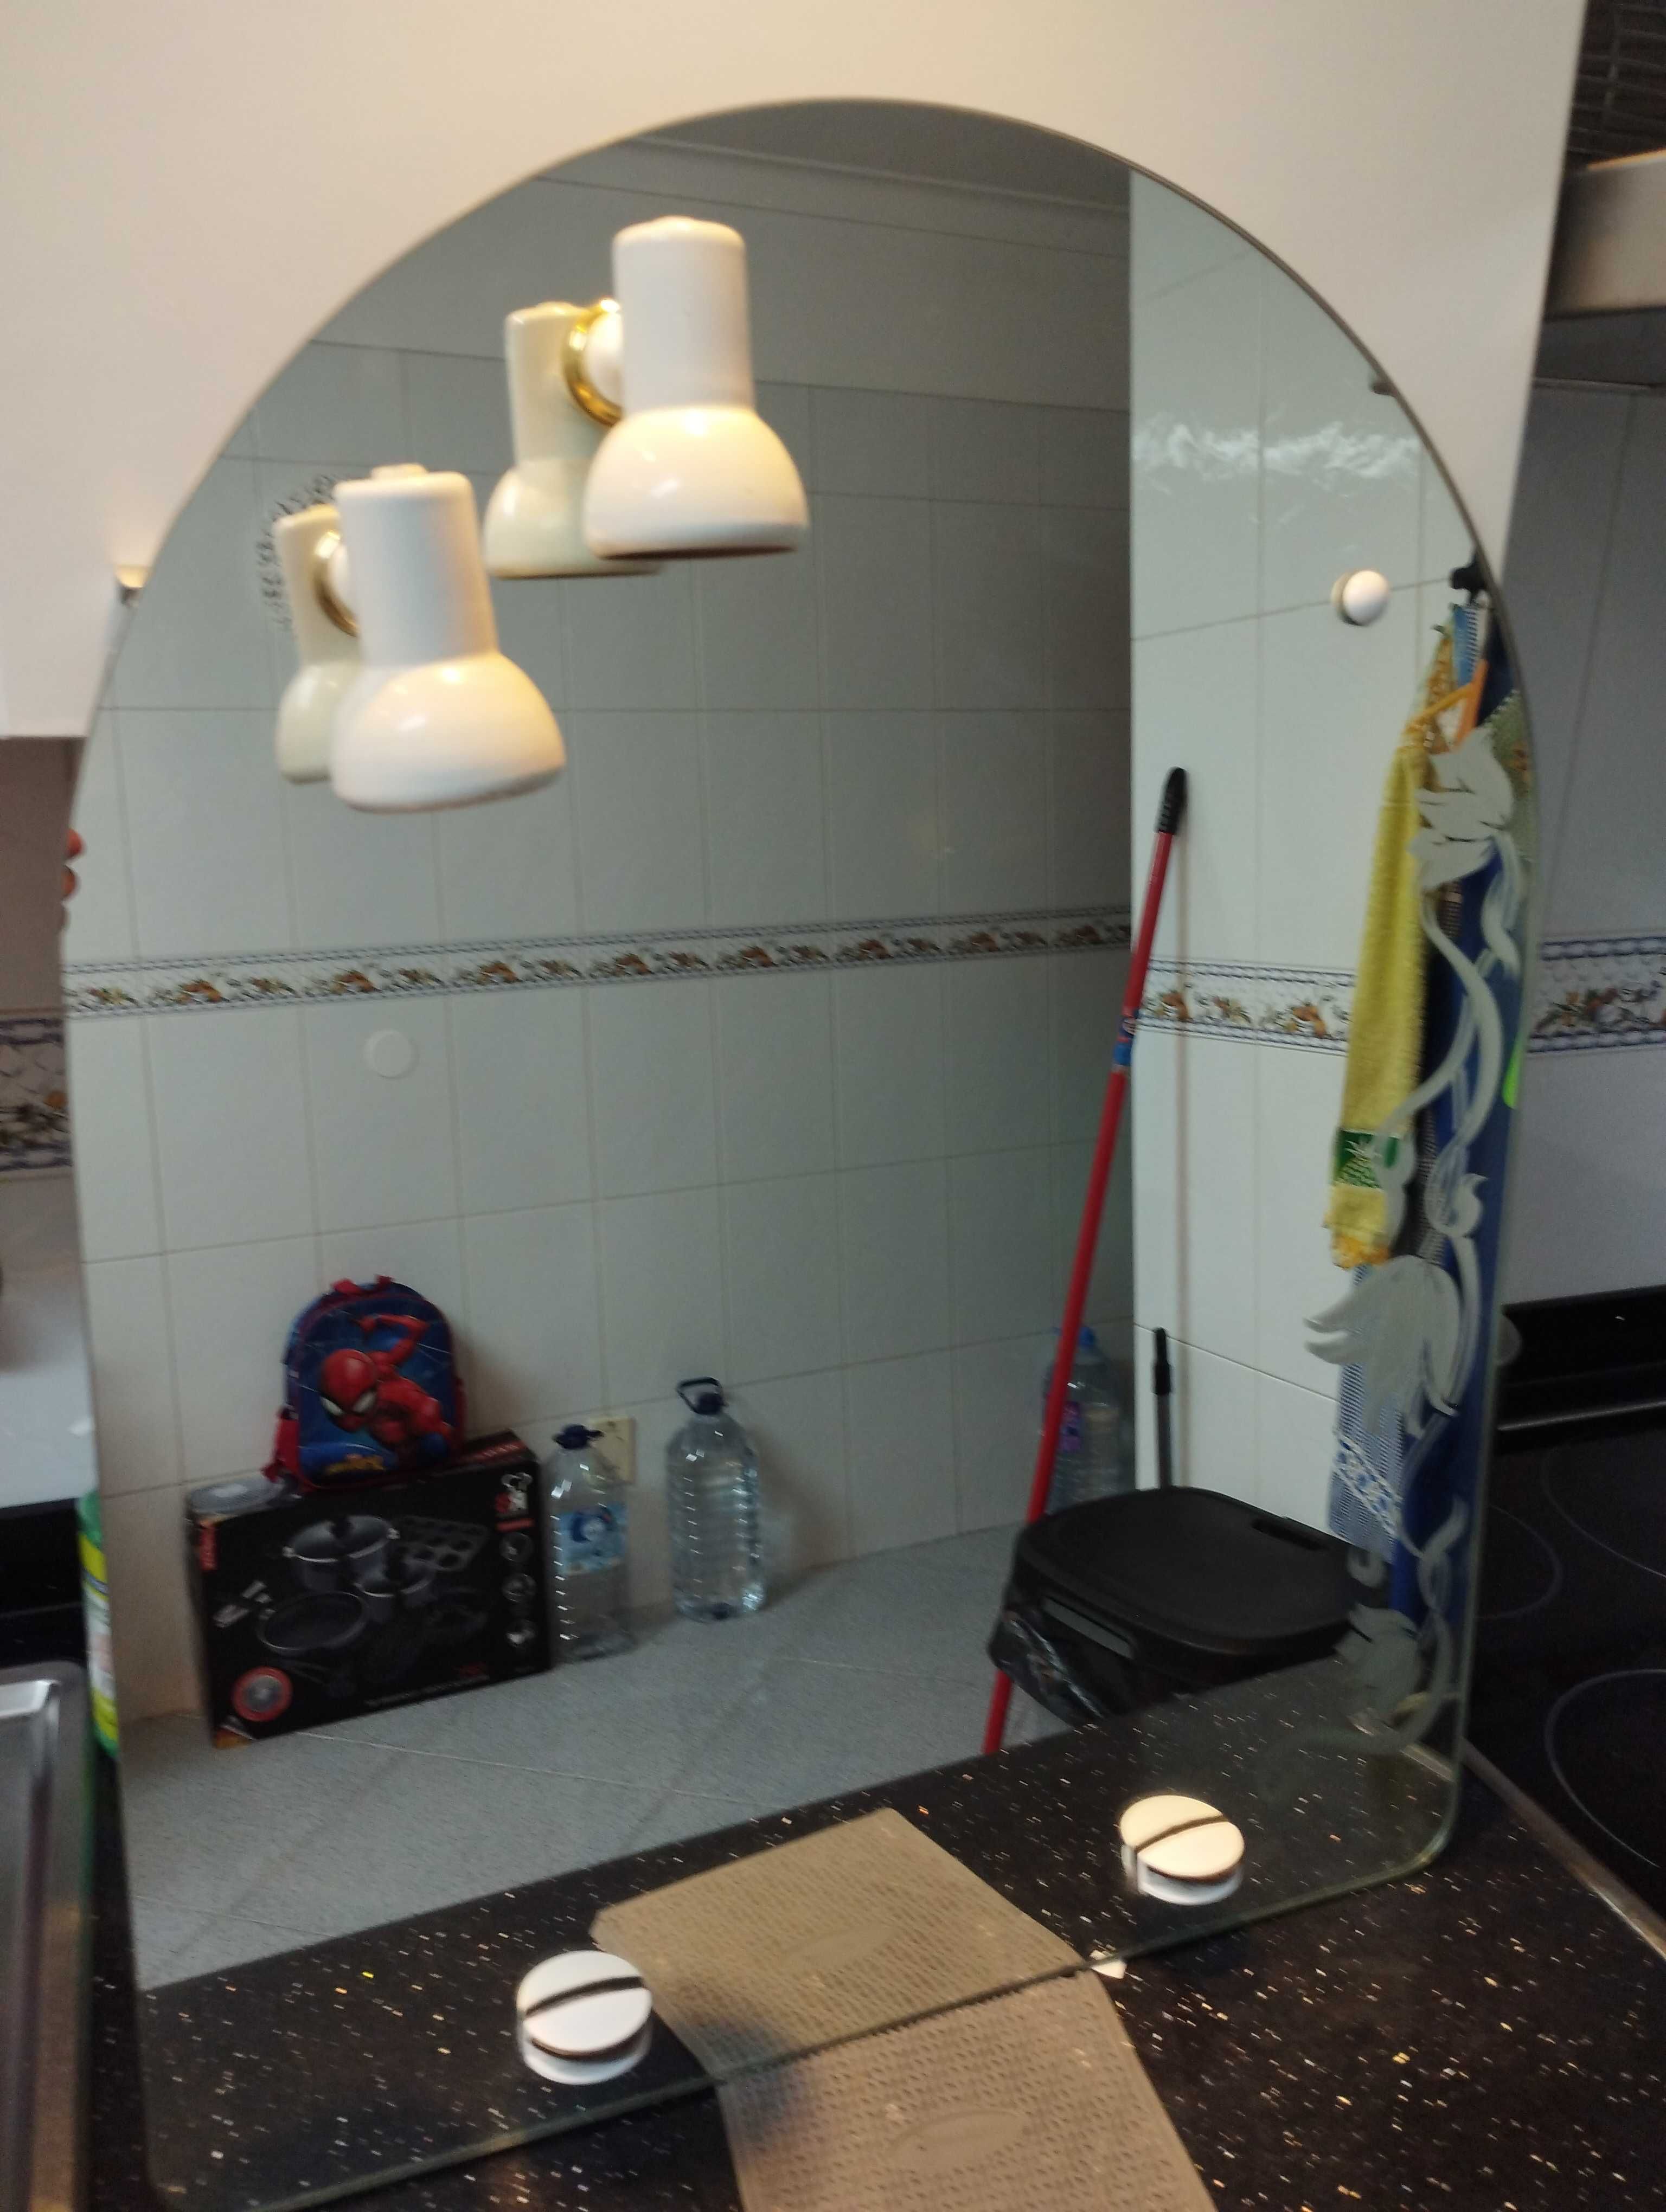 Espelho de casa de banho